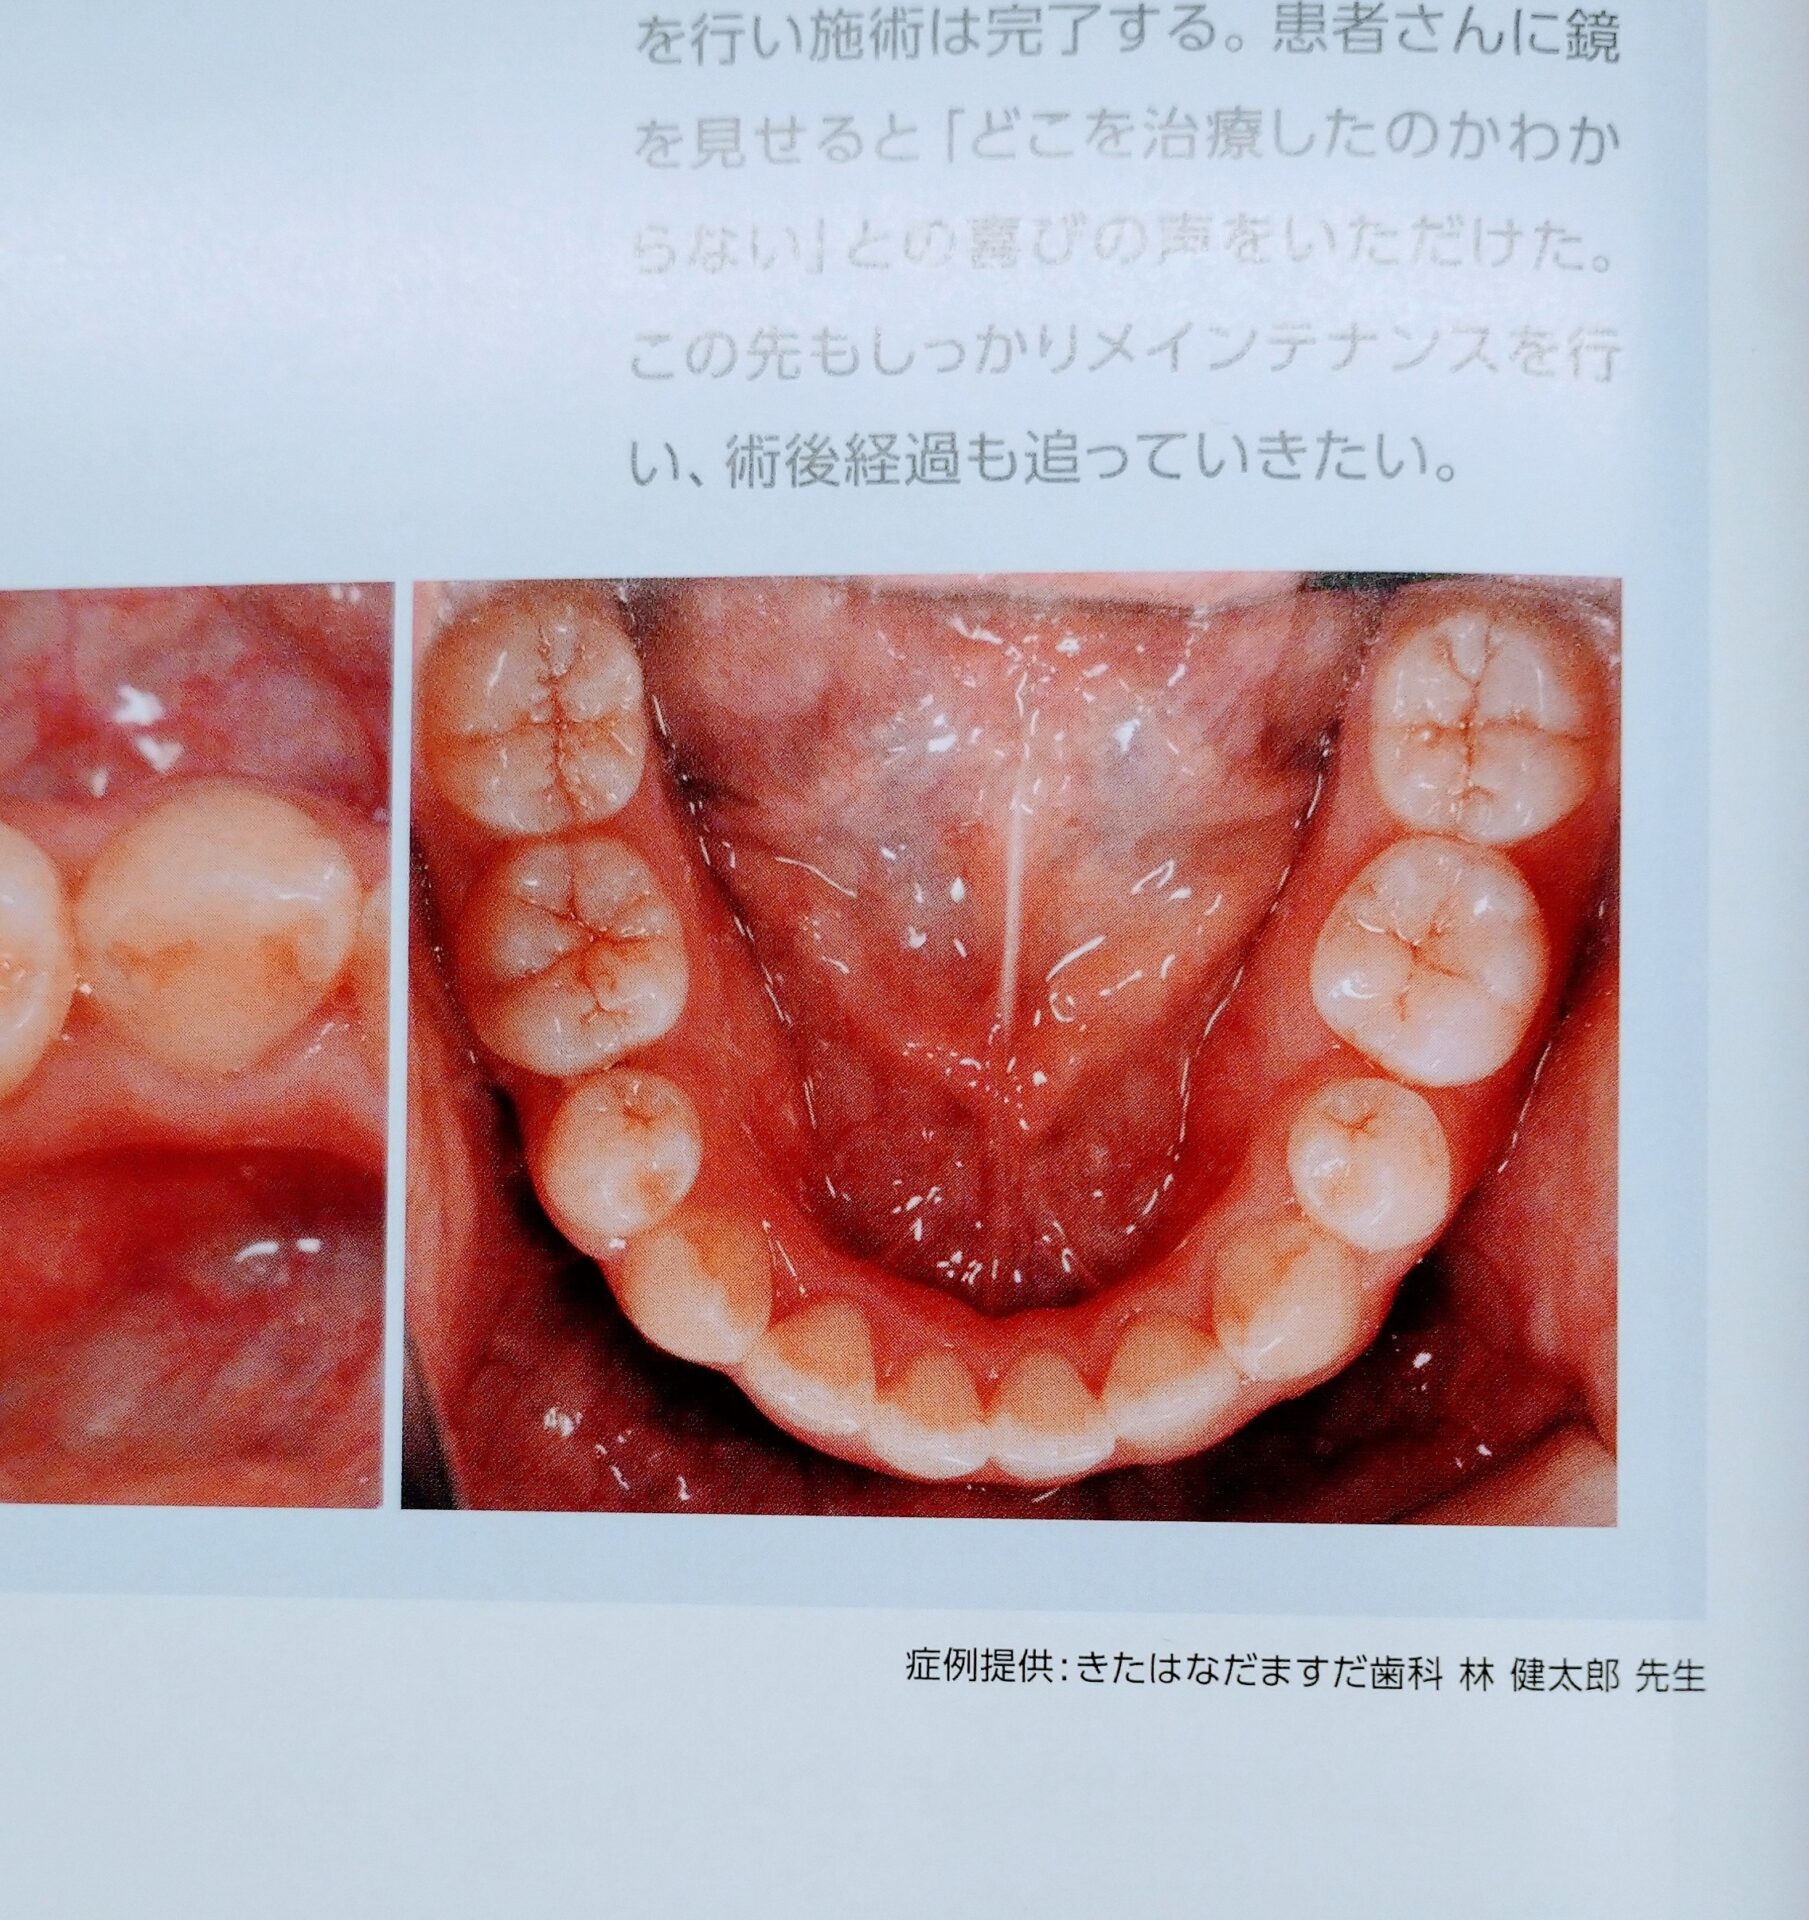 歯科雑誌へ掲載されたセラミック症例